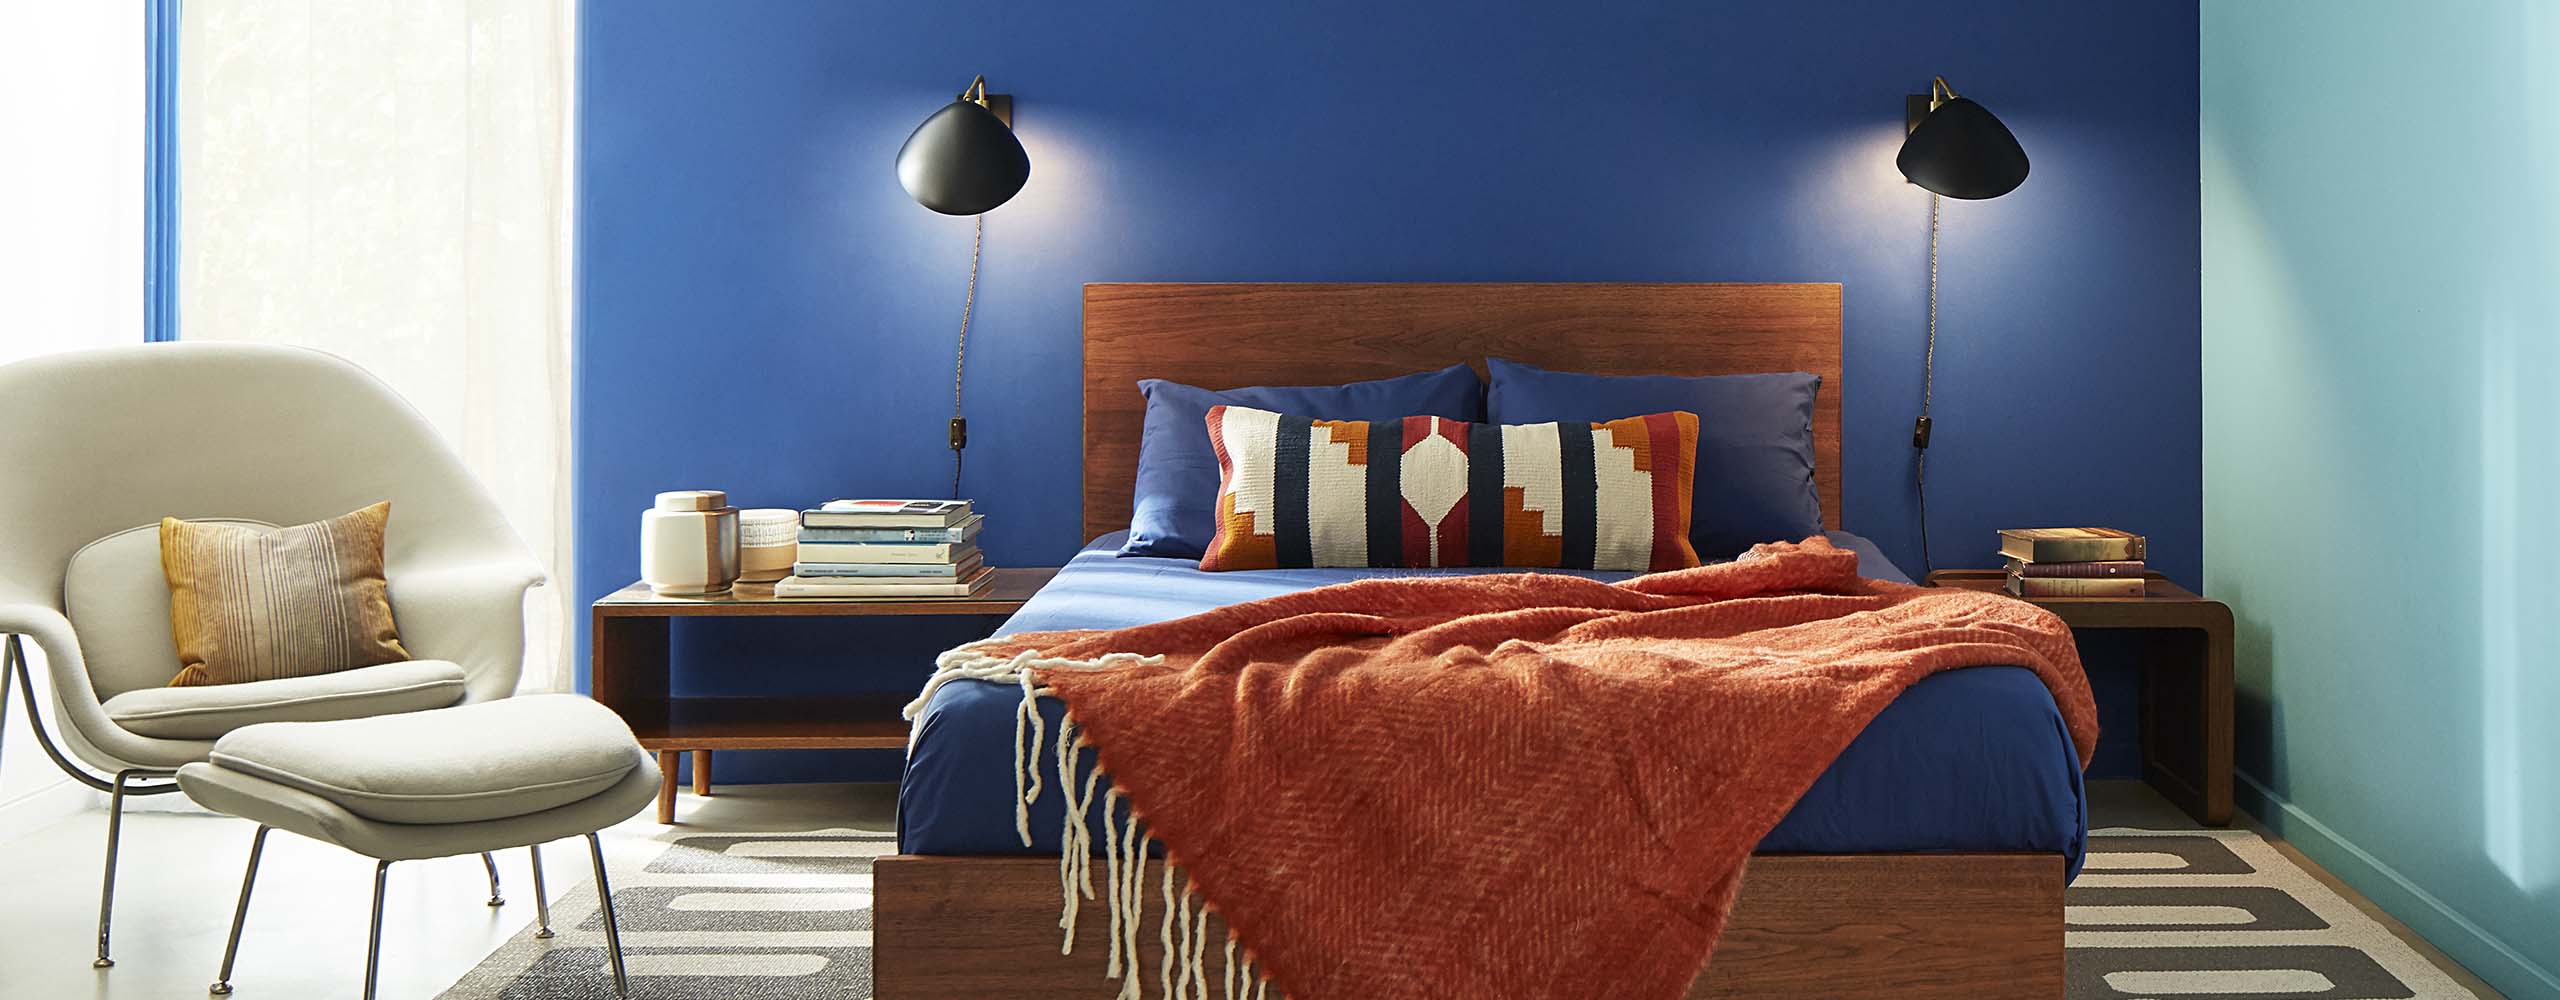 Chambre à coucher avec deux murs d’accent bleus, cadre de lit en bois avec jeté rouille, fauteuil beige de style contemporain et lampes de lecture de chaque côté du lit.